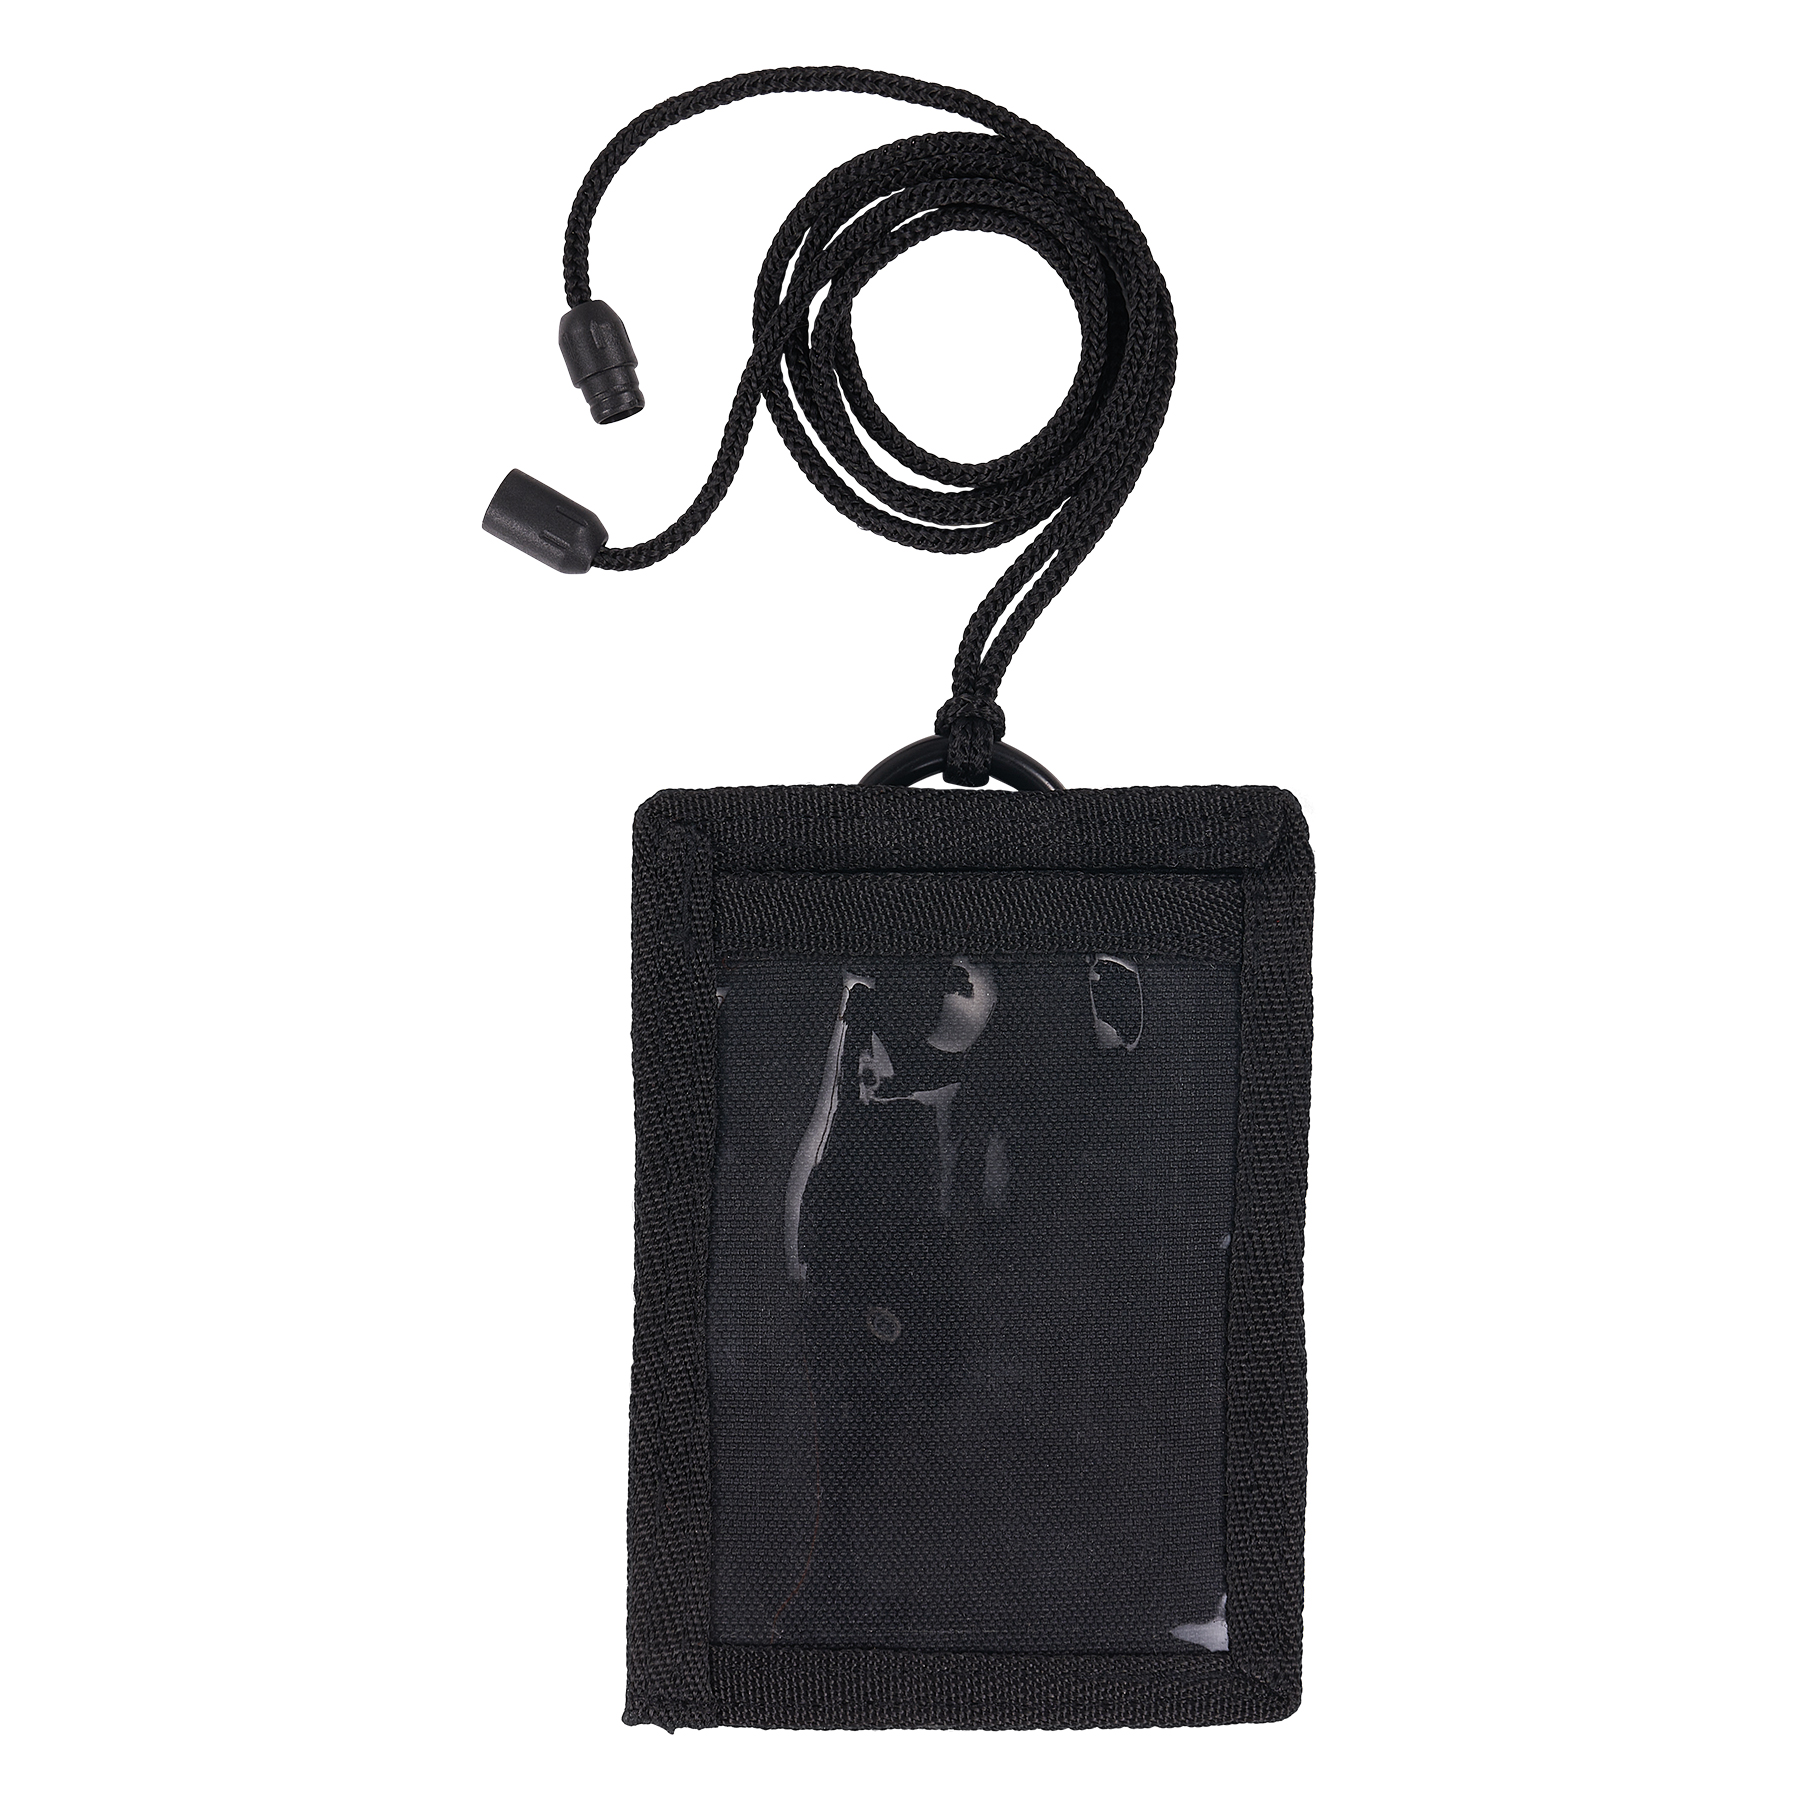 Black Fabric Lanyard ID Badge Key Holder Case Pocket Neck Strap